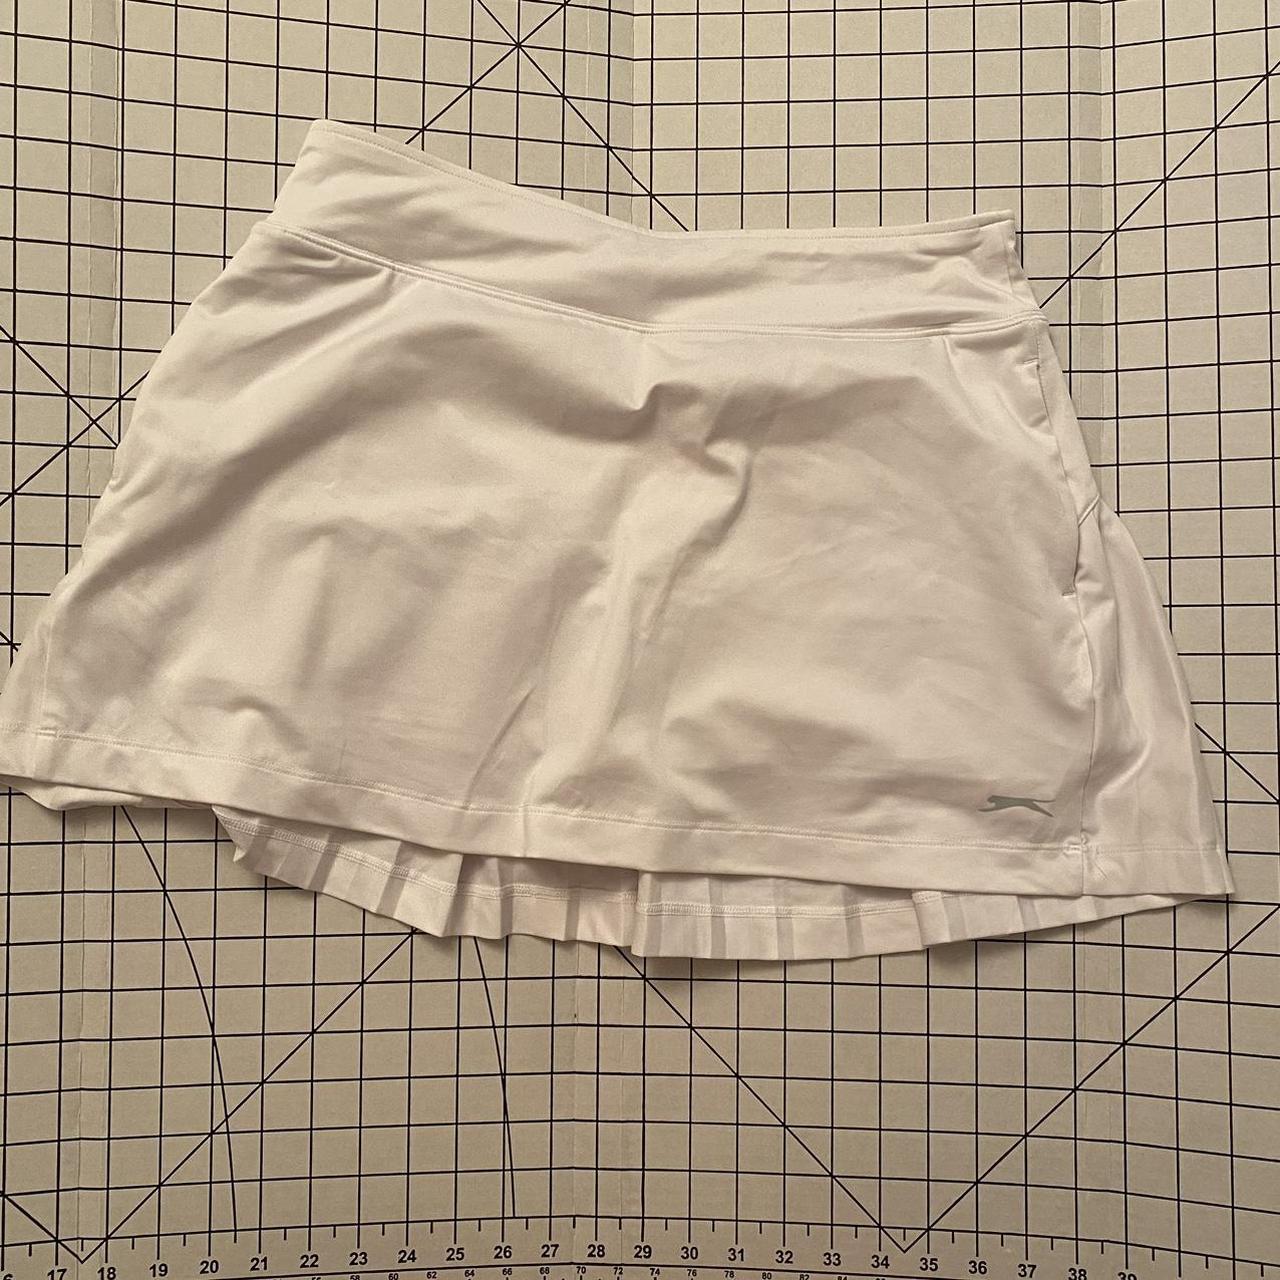 Slazenger Women's White Skirt